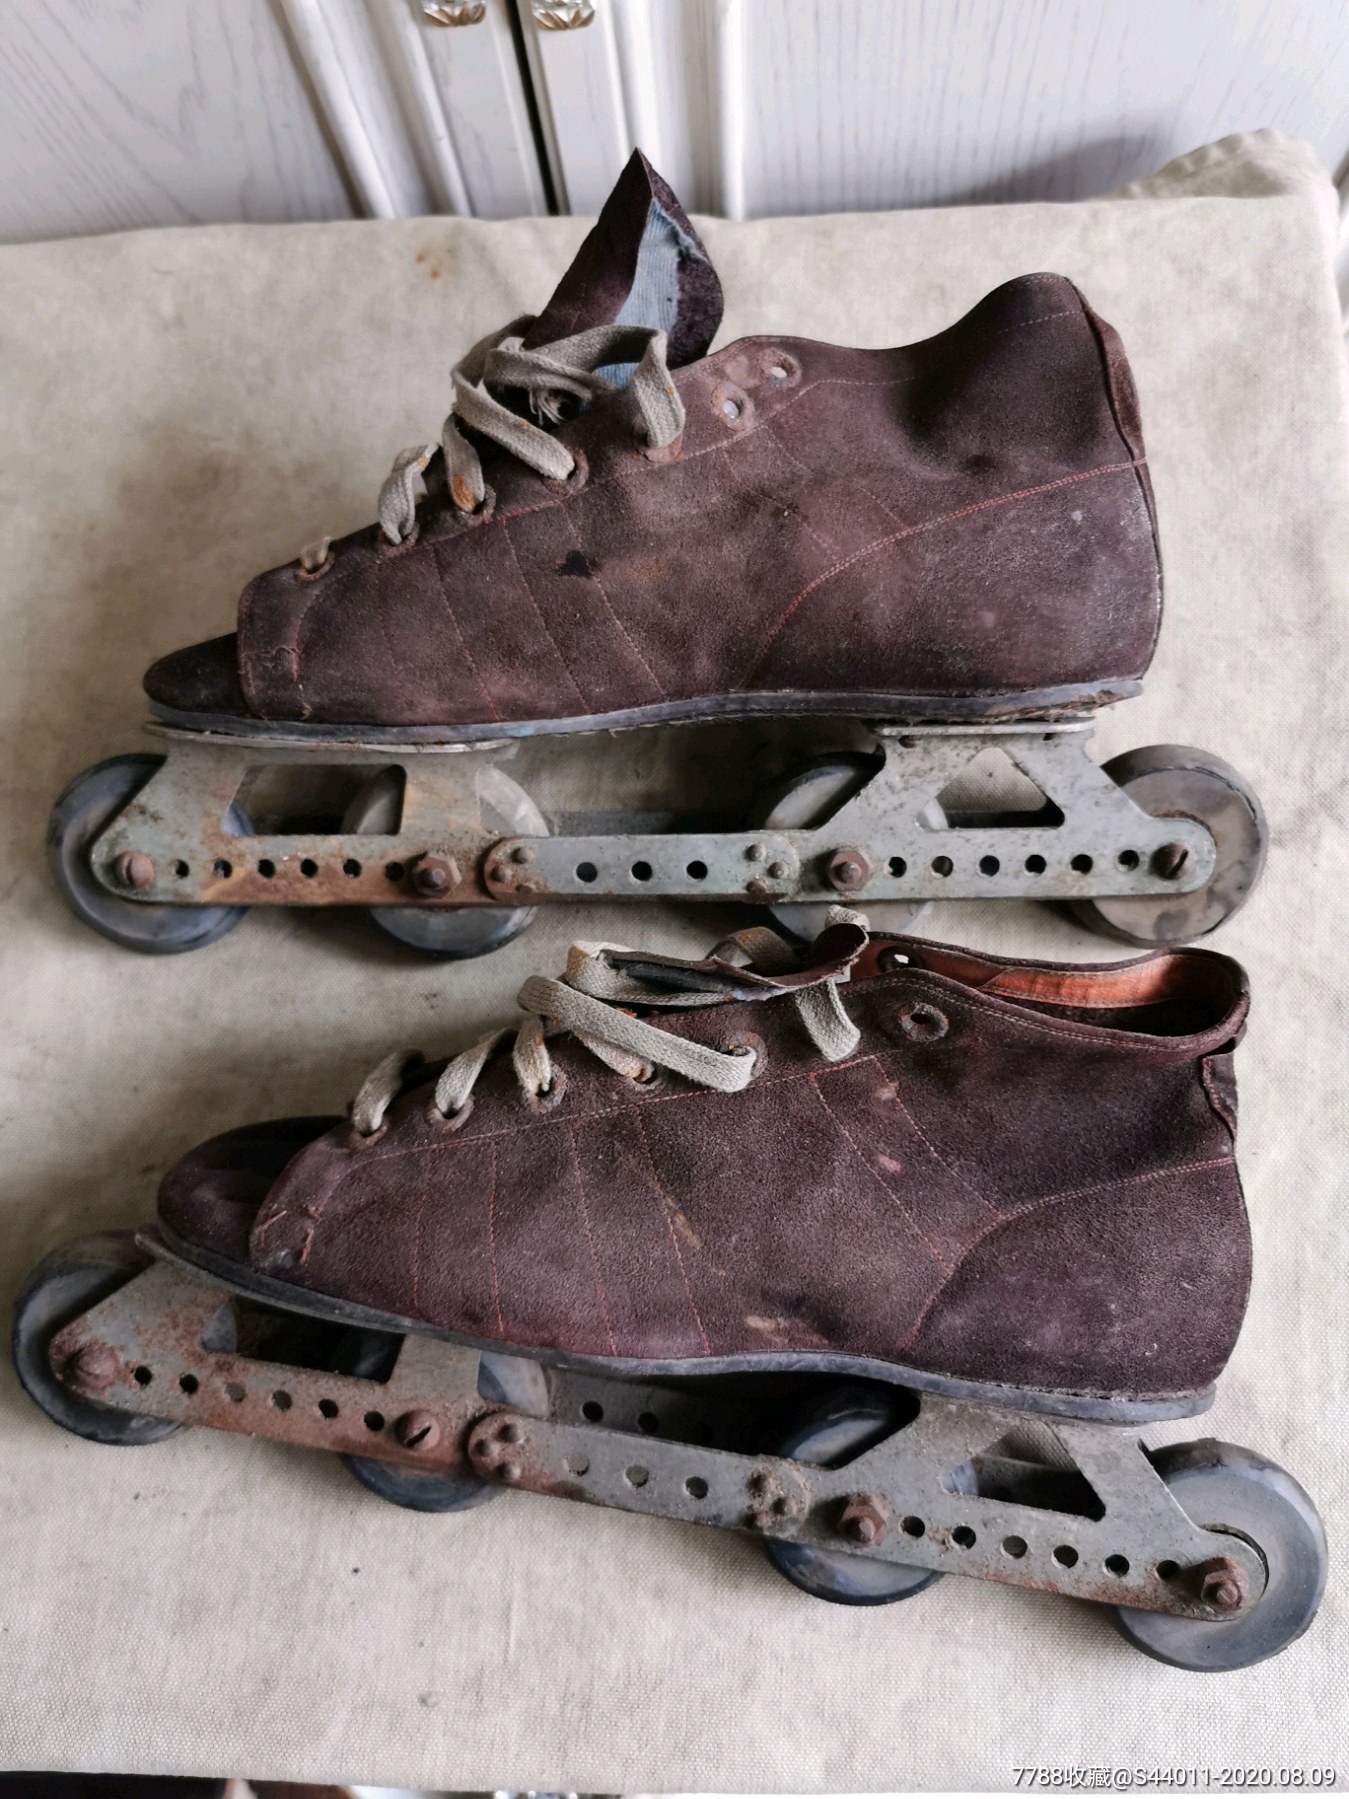 以前老式溜冰鞋图片